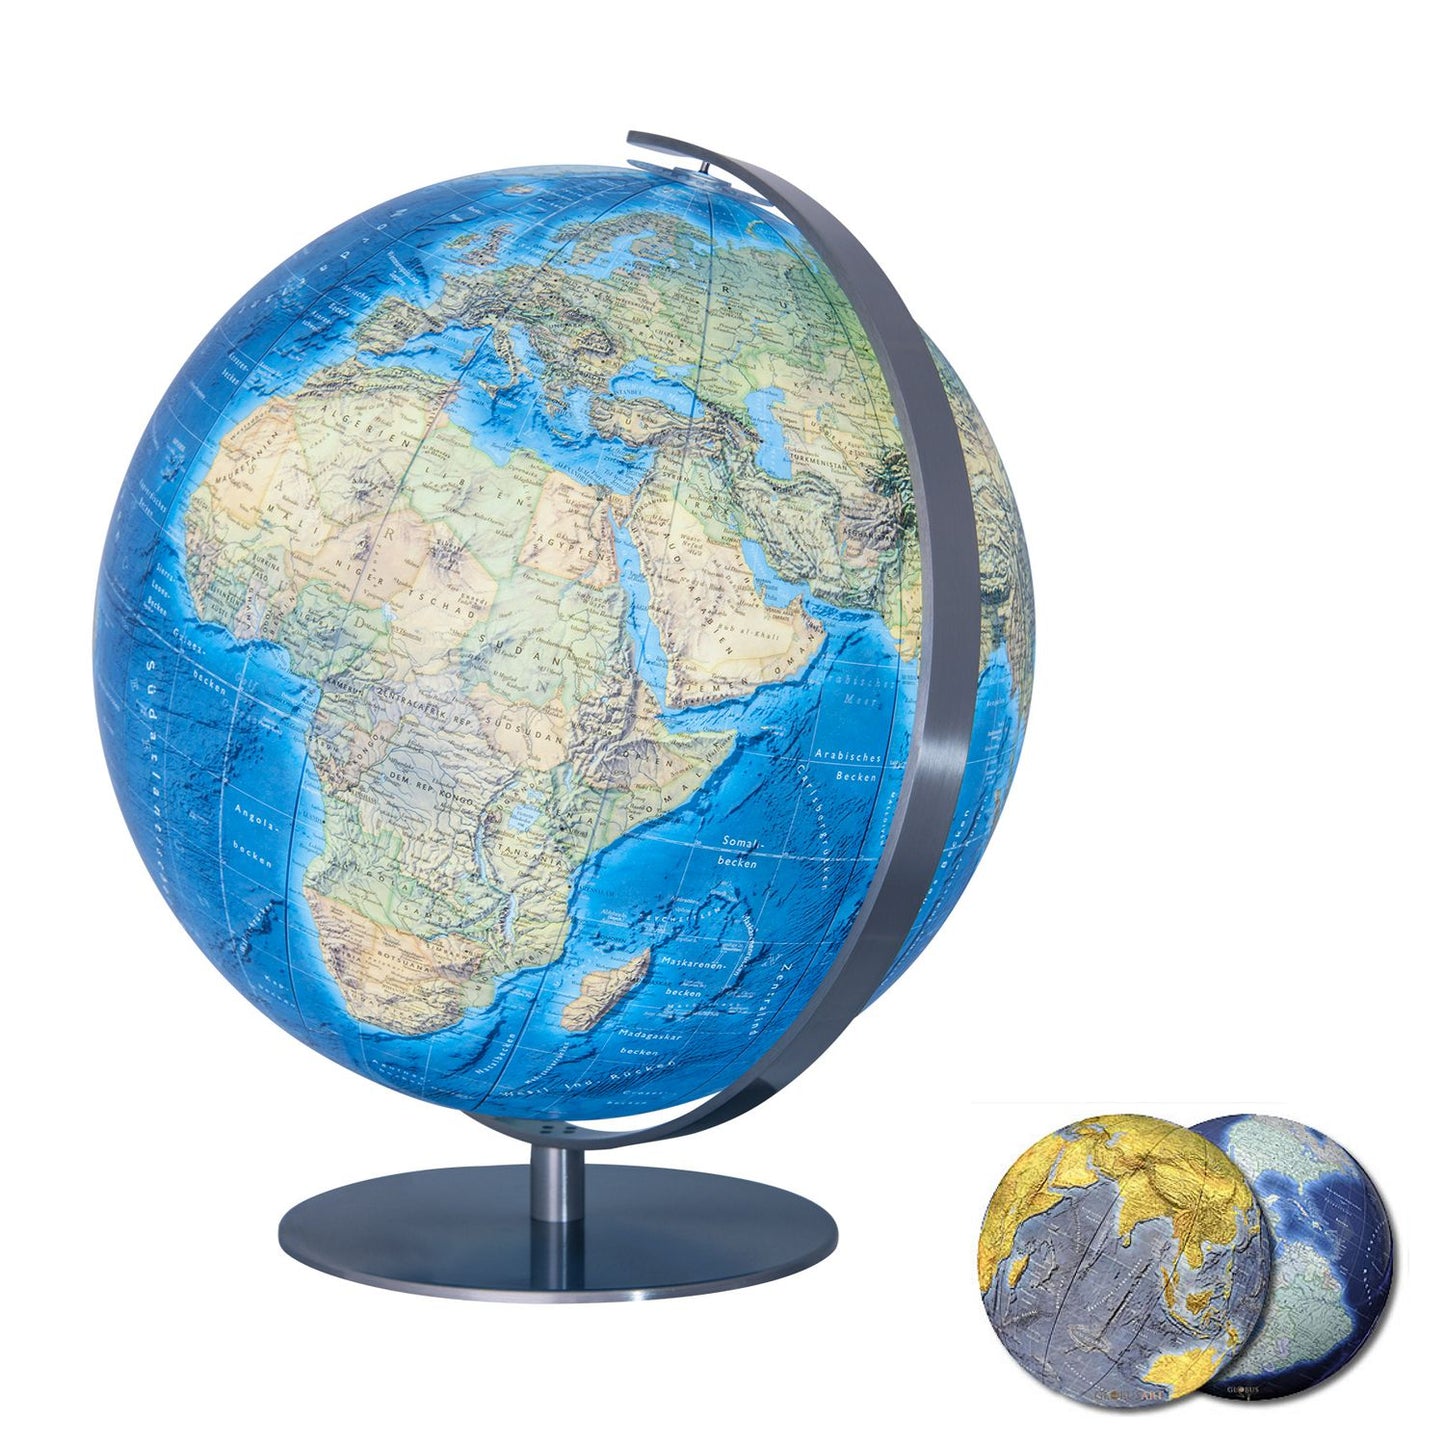 Globe de table Columbus D 51 cm verre acrylique, image de carte anglaise, différentes variantes